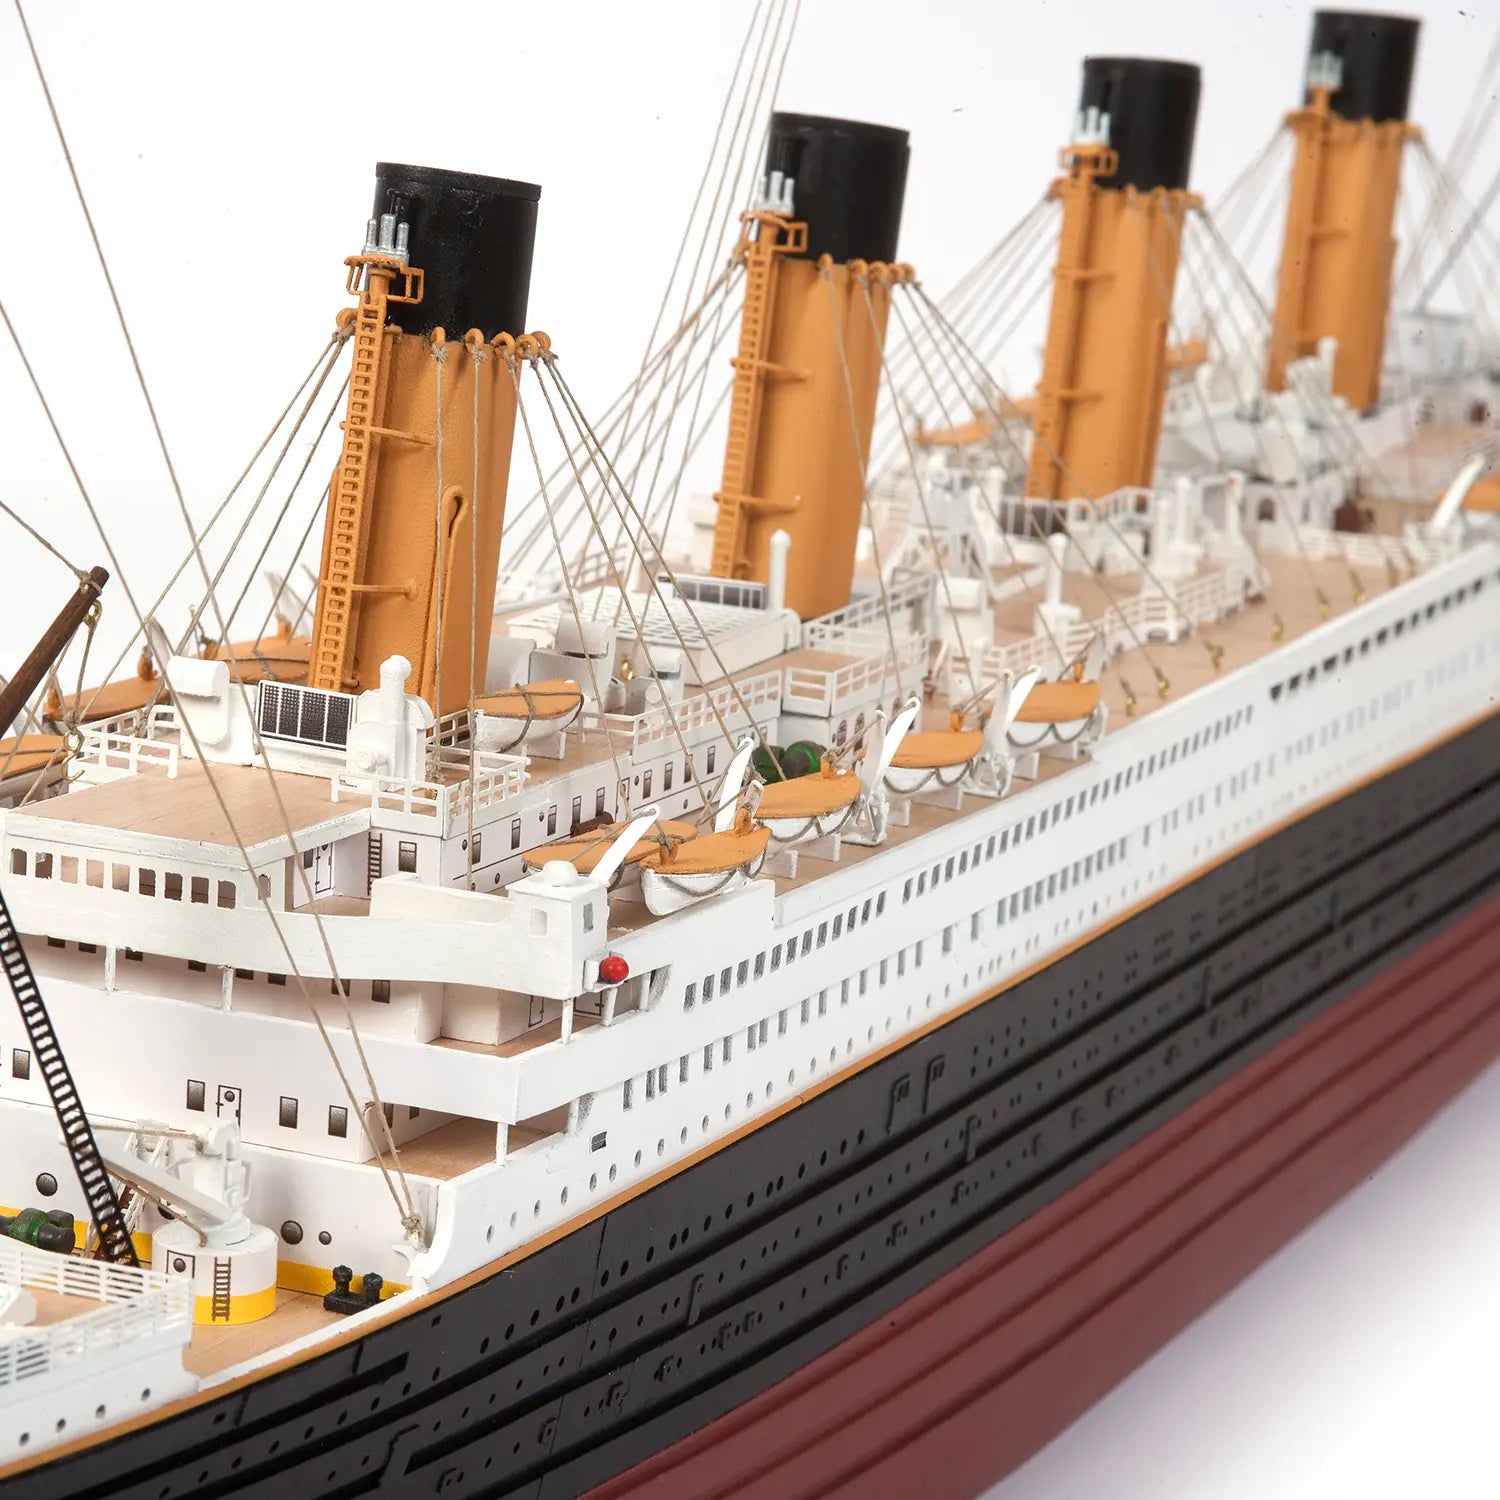 Puy-de-Dôme : il collectionne les objets sur le Titanic, dont une maquette  de 1 mètre 80 - Ceyrat (63122)